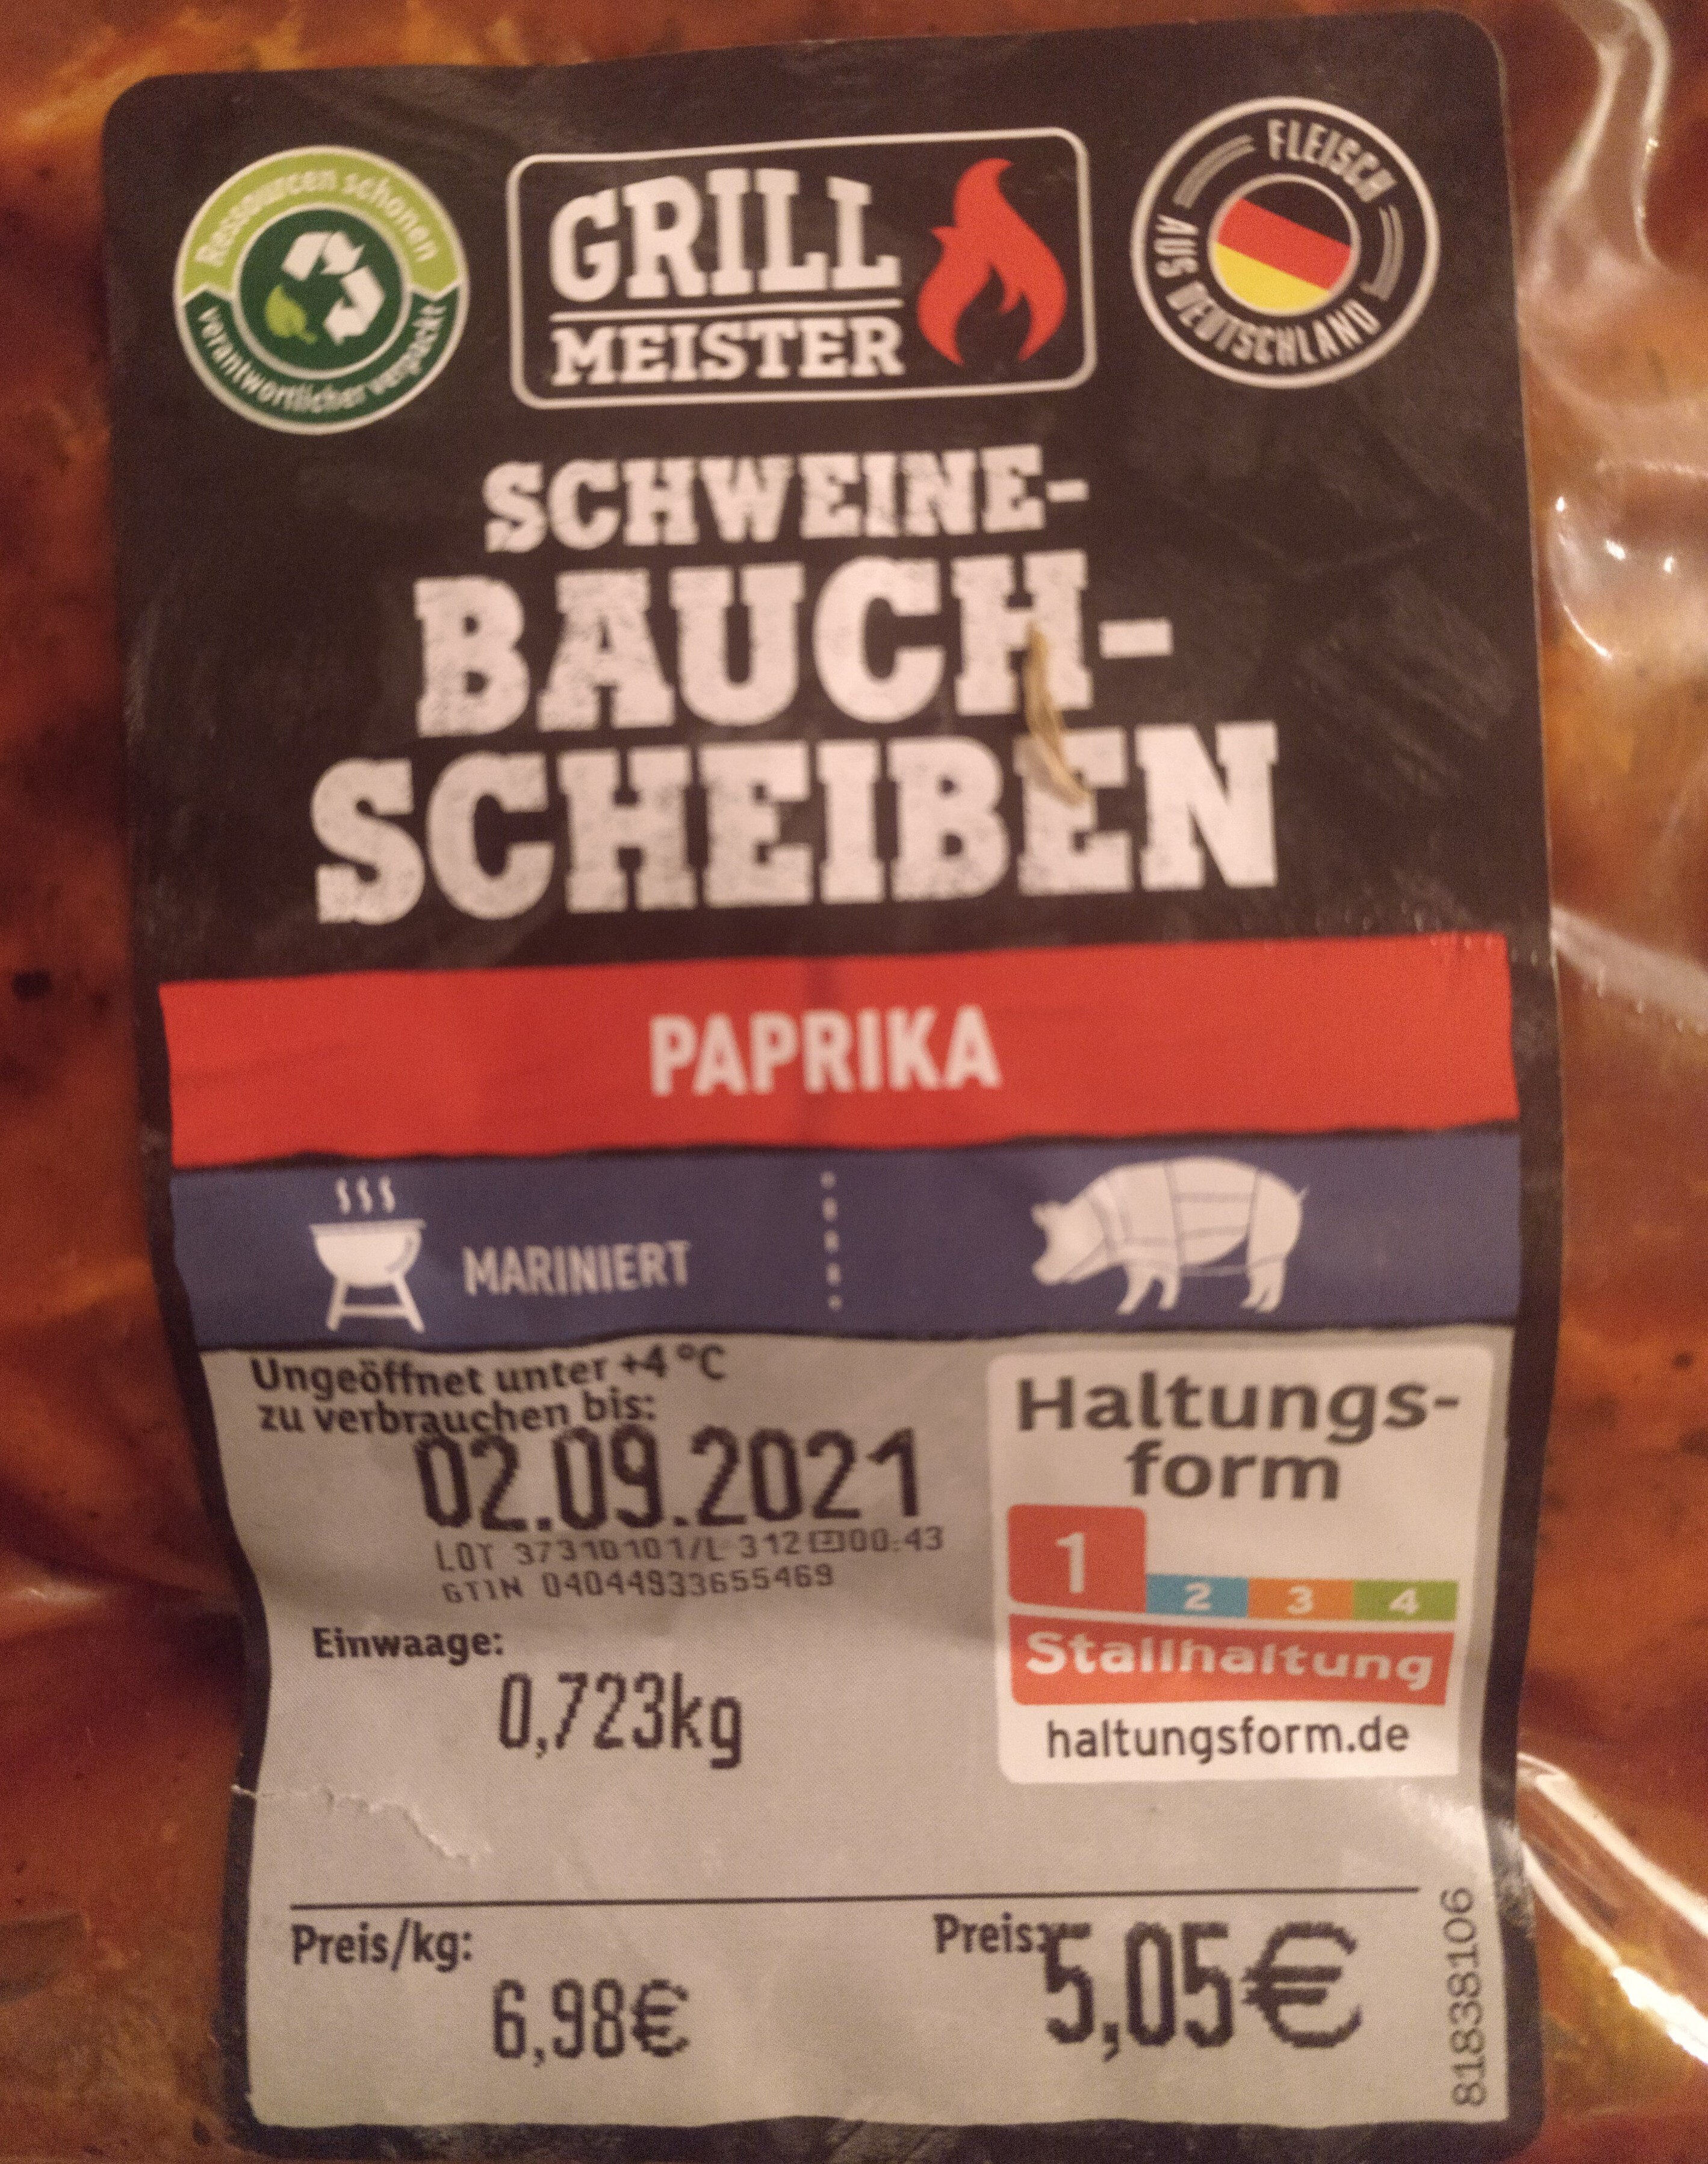 Schweinebauchscheiben - Paprika - Product - de